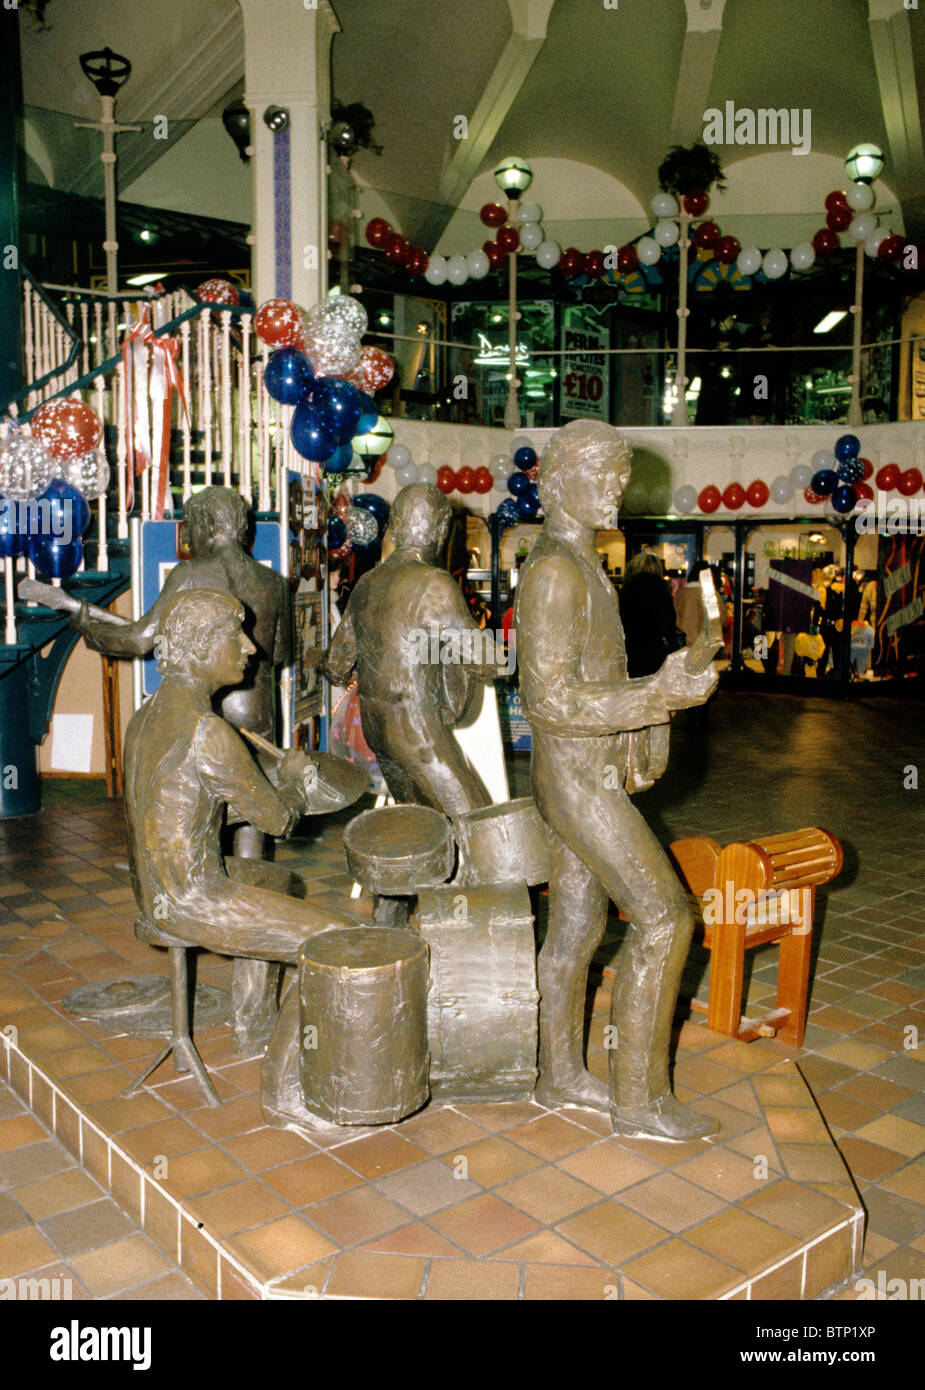 Cavern de Liverpool Promenades Shopping Centre Les Beatles England UK statues statue de la musique pop anglaise musiciens musicien Paul McCartney Banque D'Images